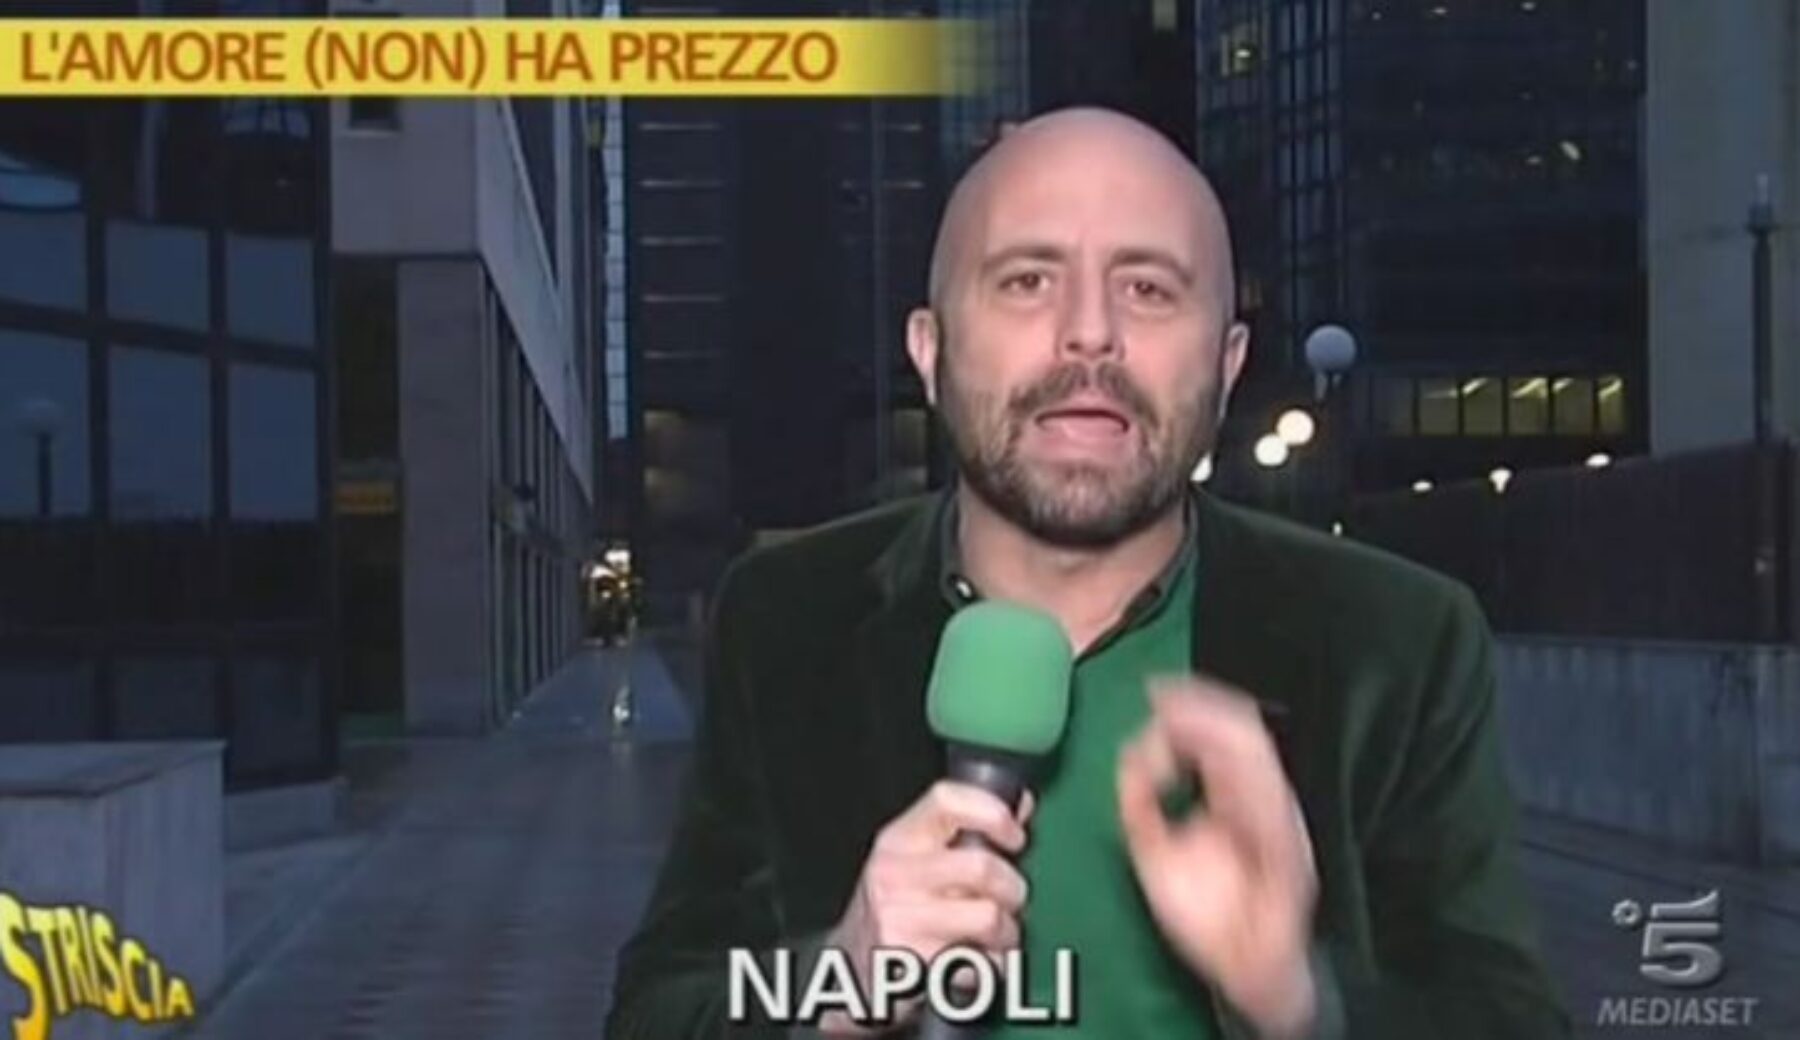 Immigrazione clandestina, 18 arresti da Napoli a Milano per finti matrimoni